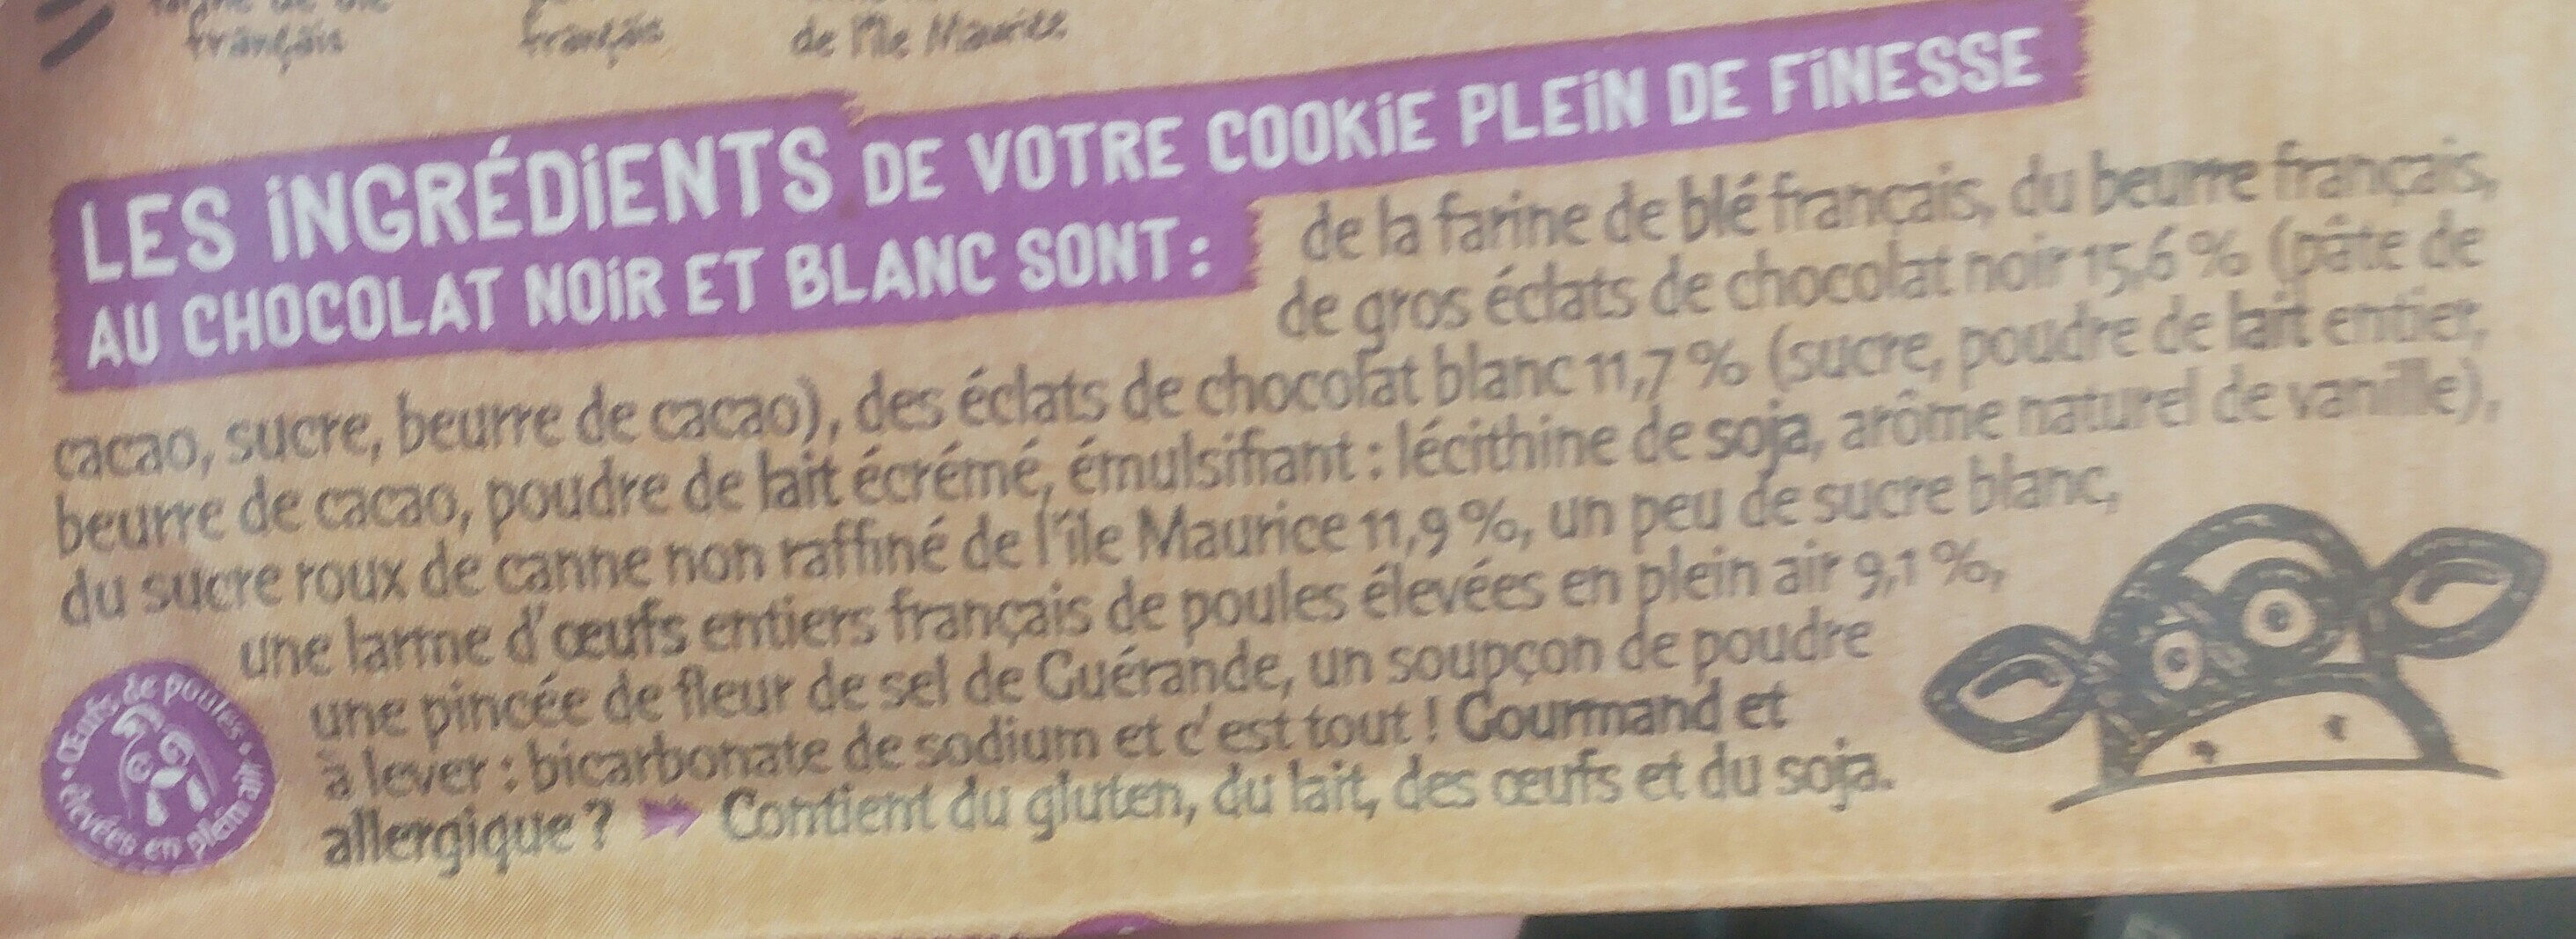 Le cookie - Chocolat noir et blanc - Ingredients - fr